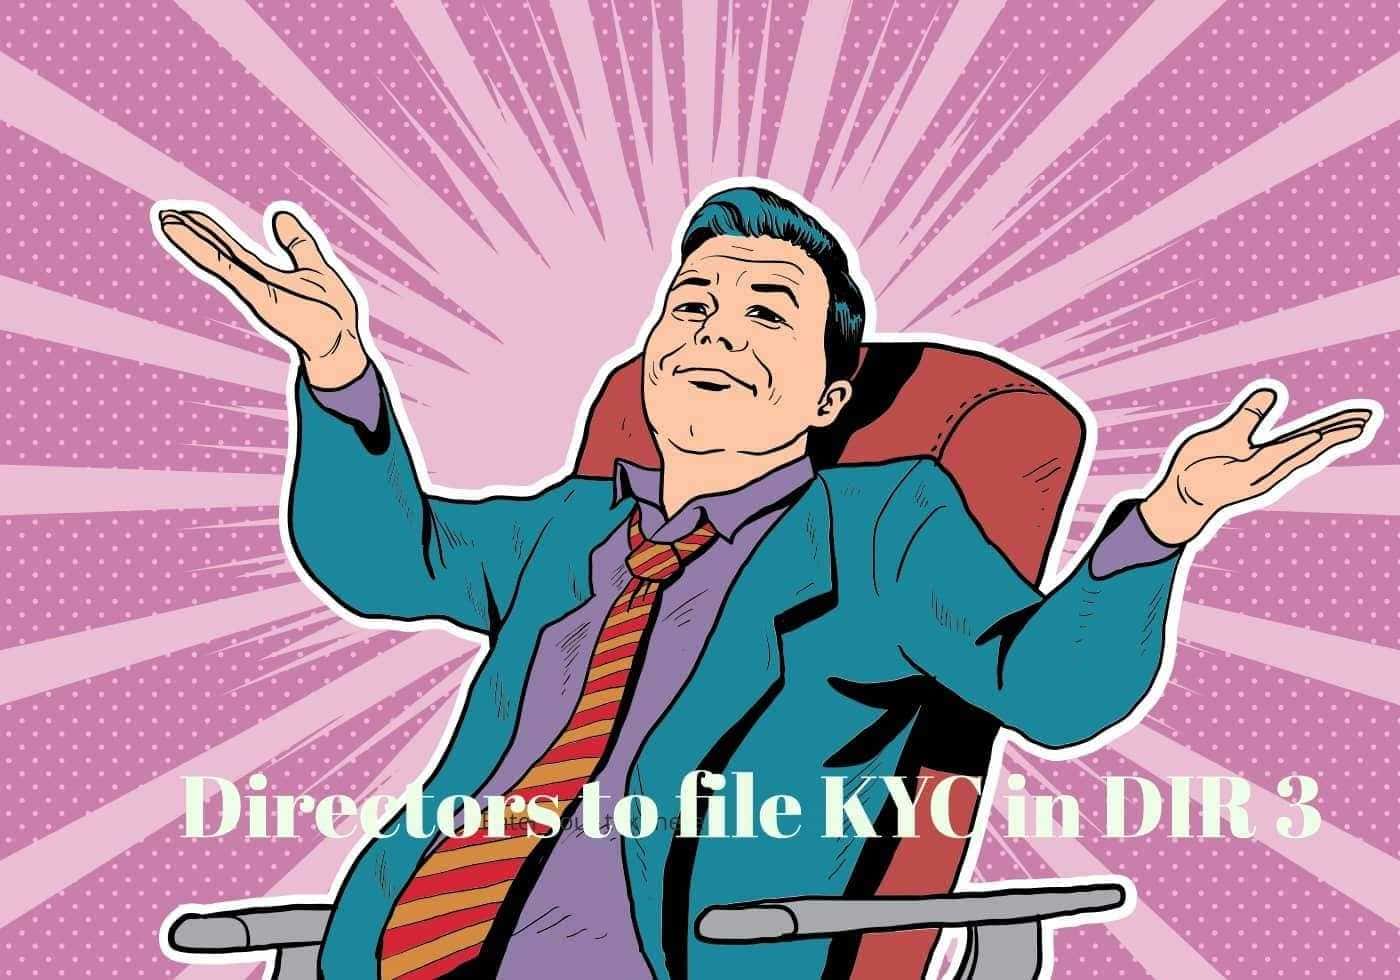 Directors to File DIR KYC 3